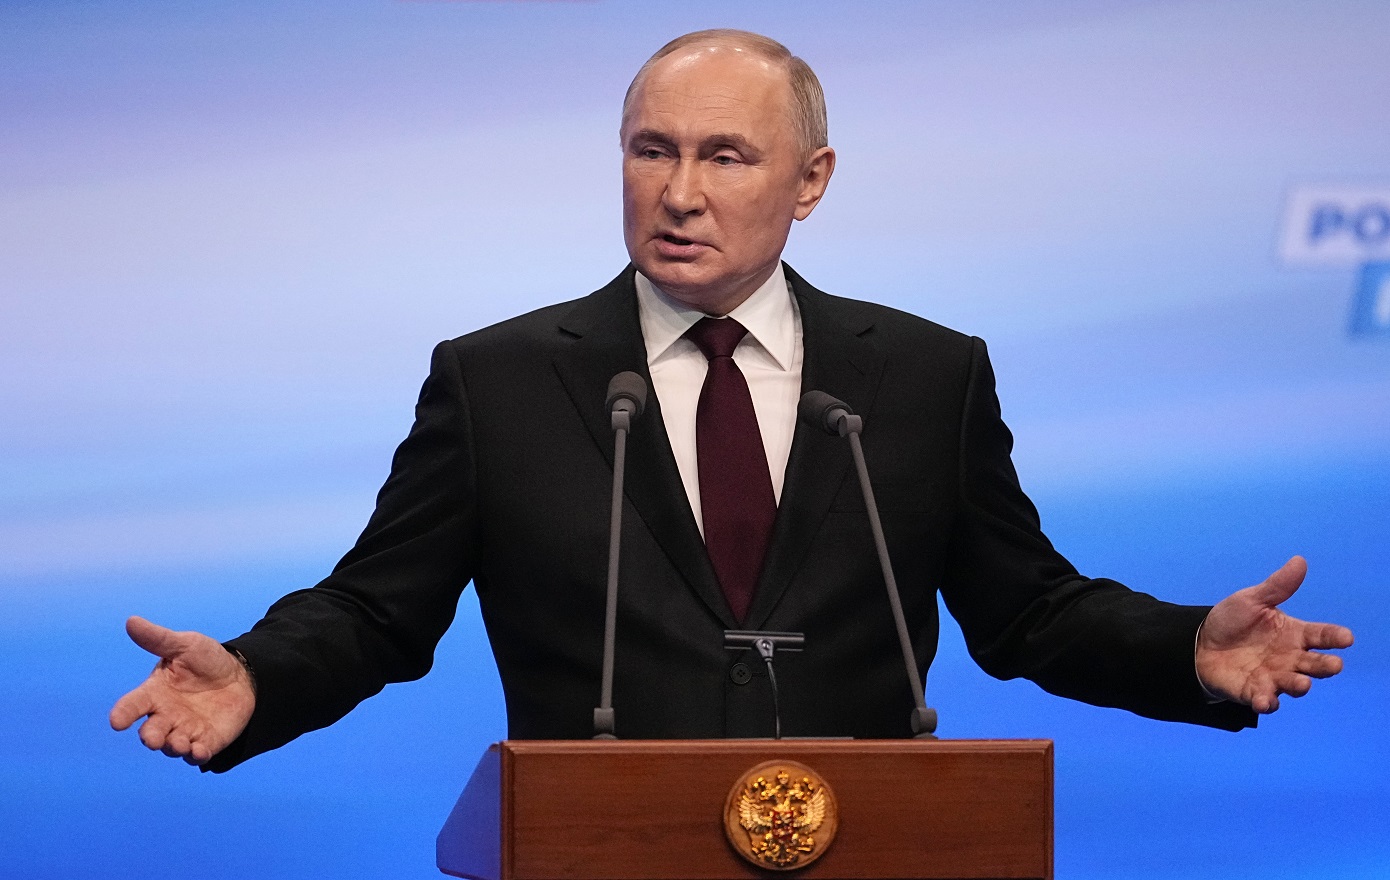 H πορεία του Βλαντίμιρ Πούτιν από τη σοβιετική KGB μέχρι την παραμονή στο  Κρεμλίνο τουλάχιστον μέχρι το 2030